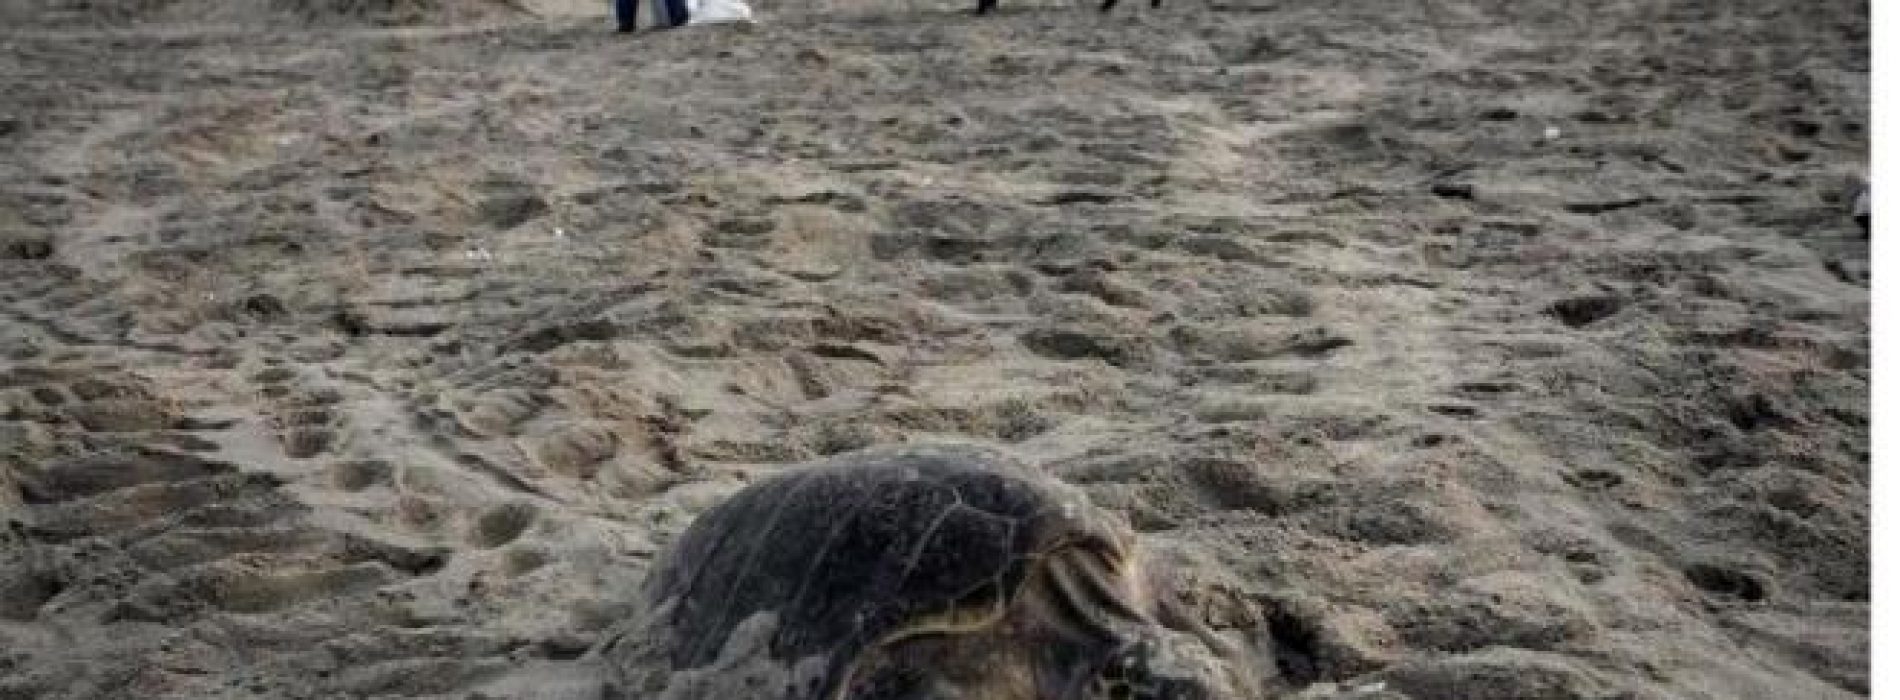 Aseguran huevos de tortugas en la costa de Oaxaca